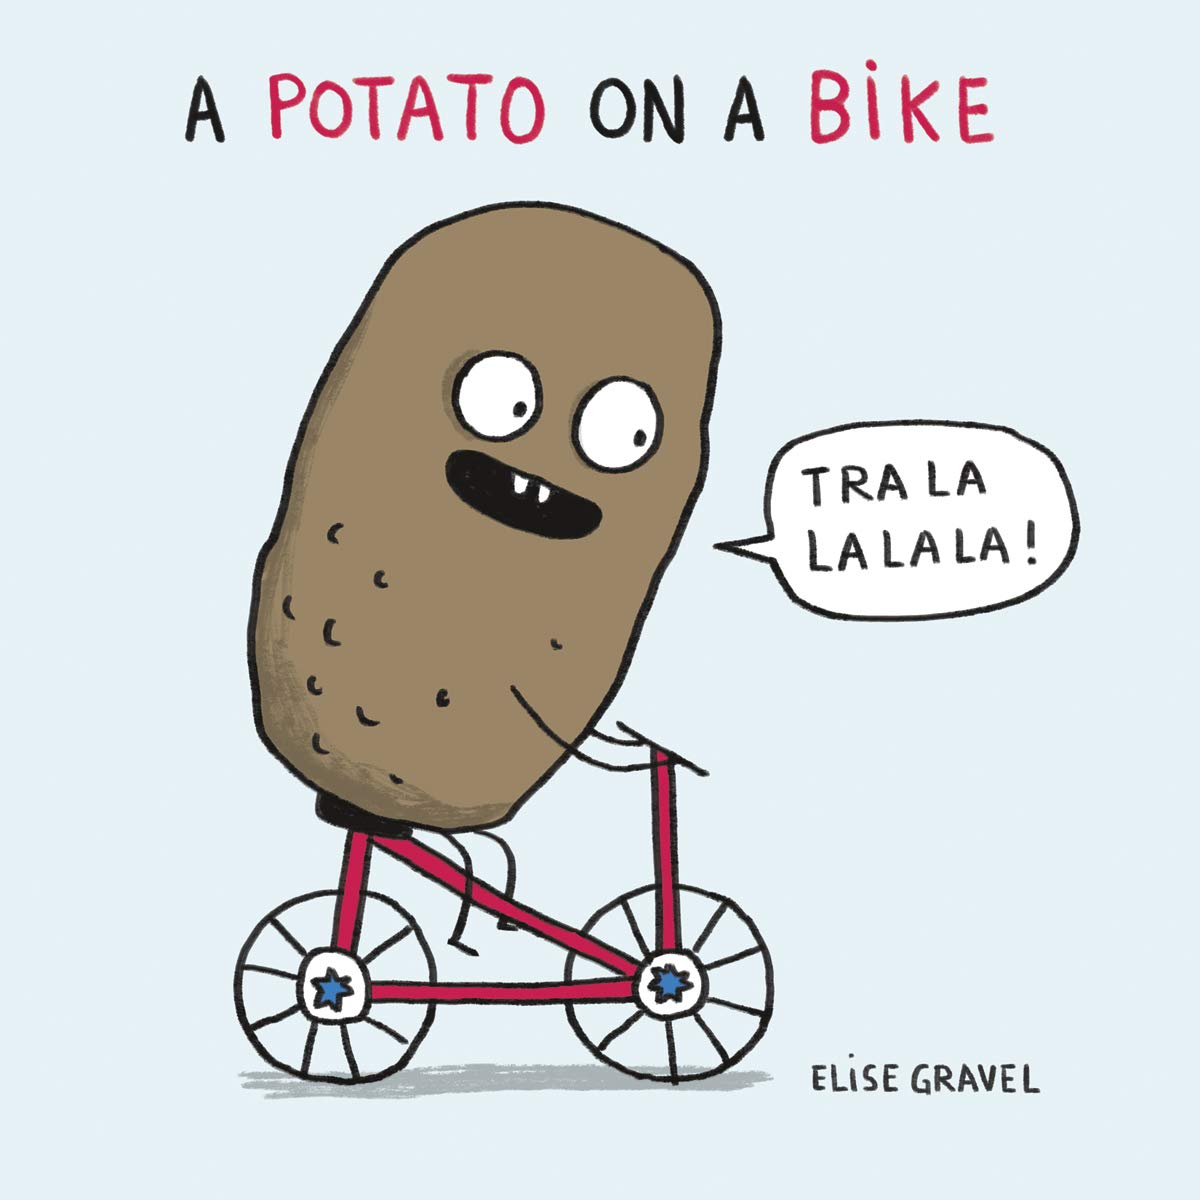 A potato on a bike